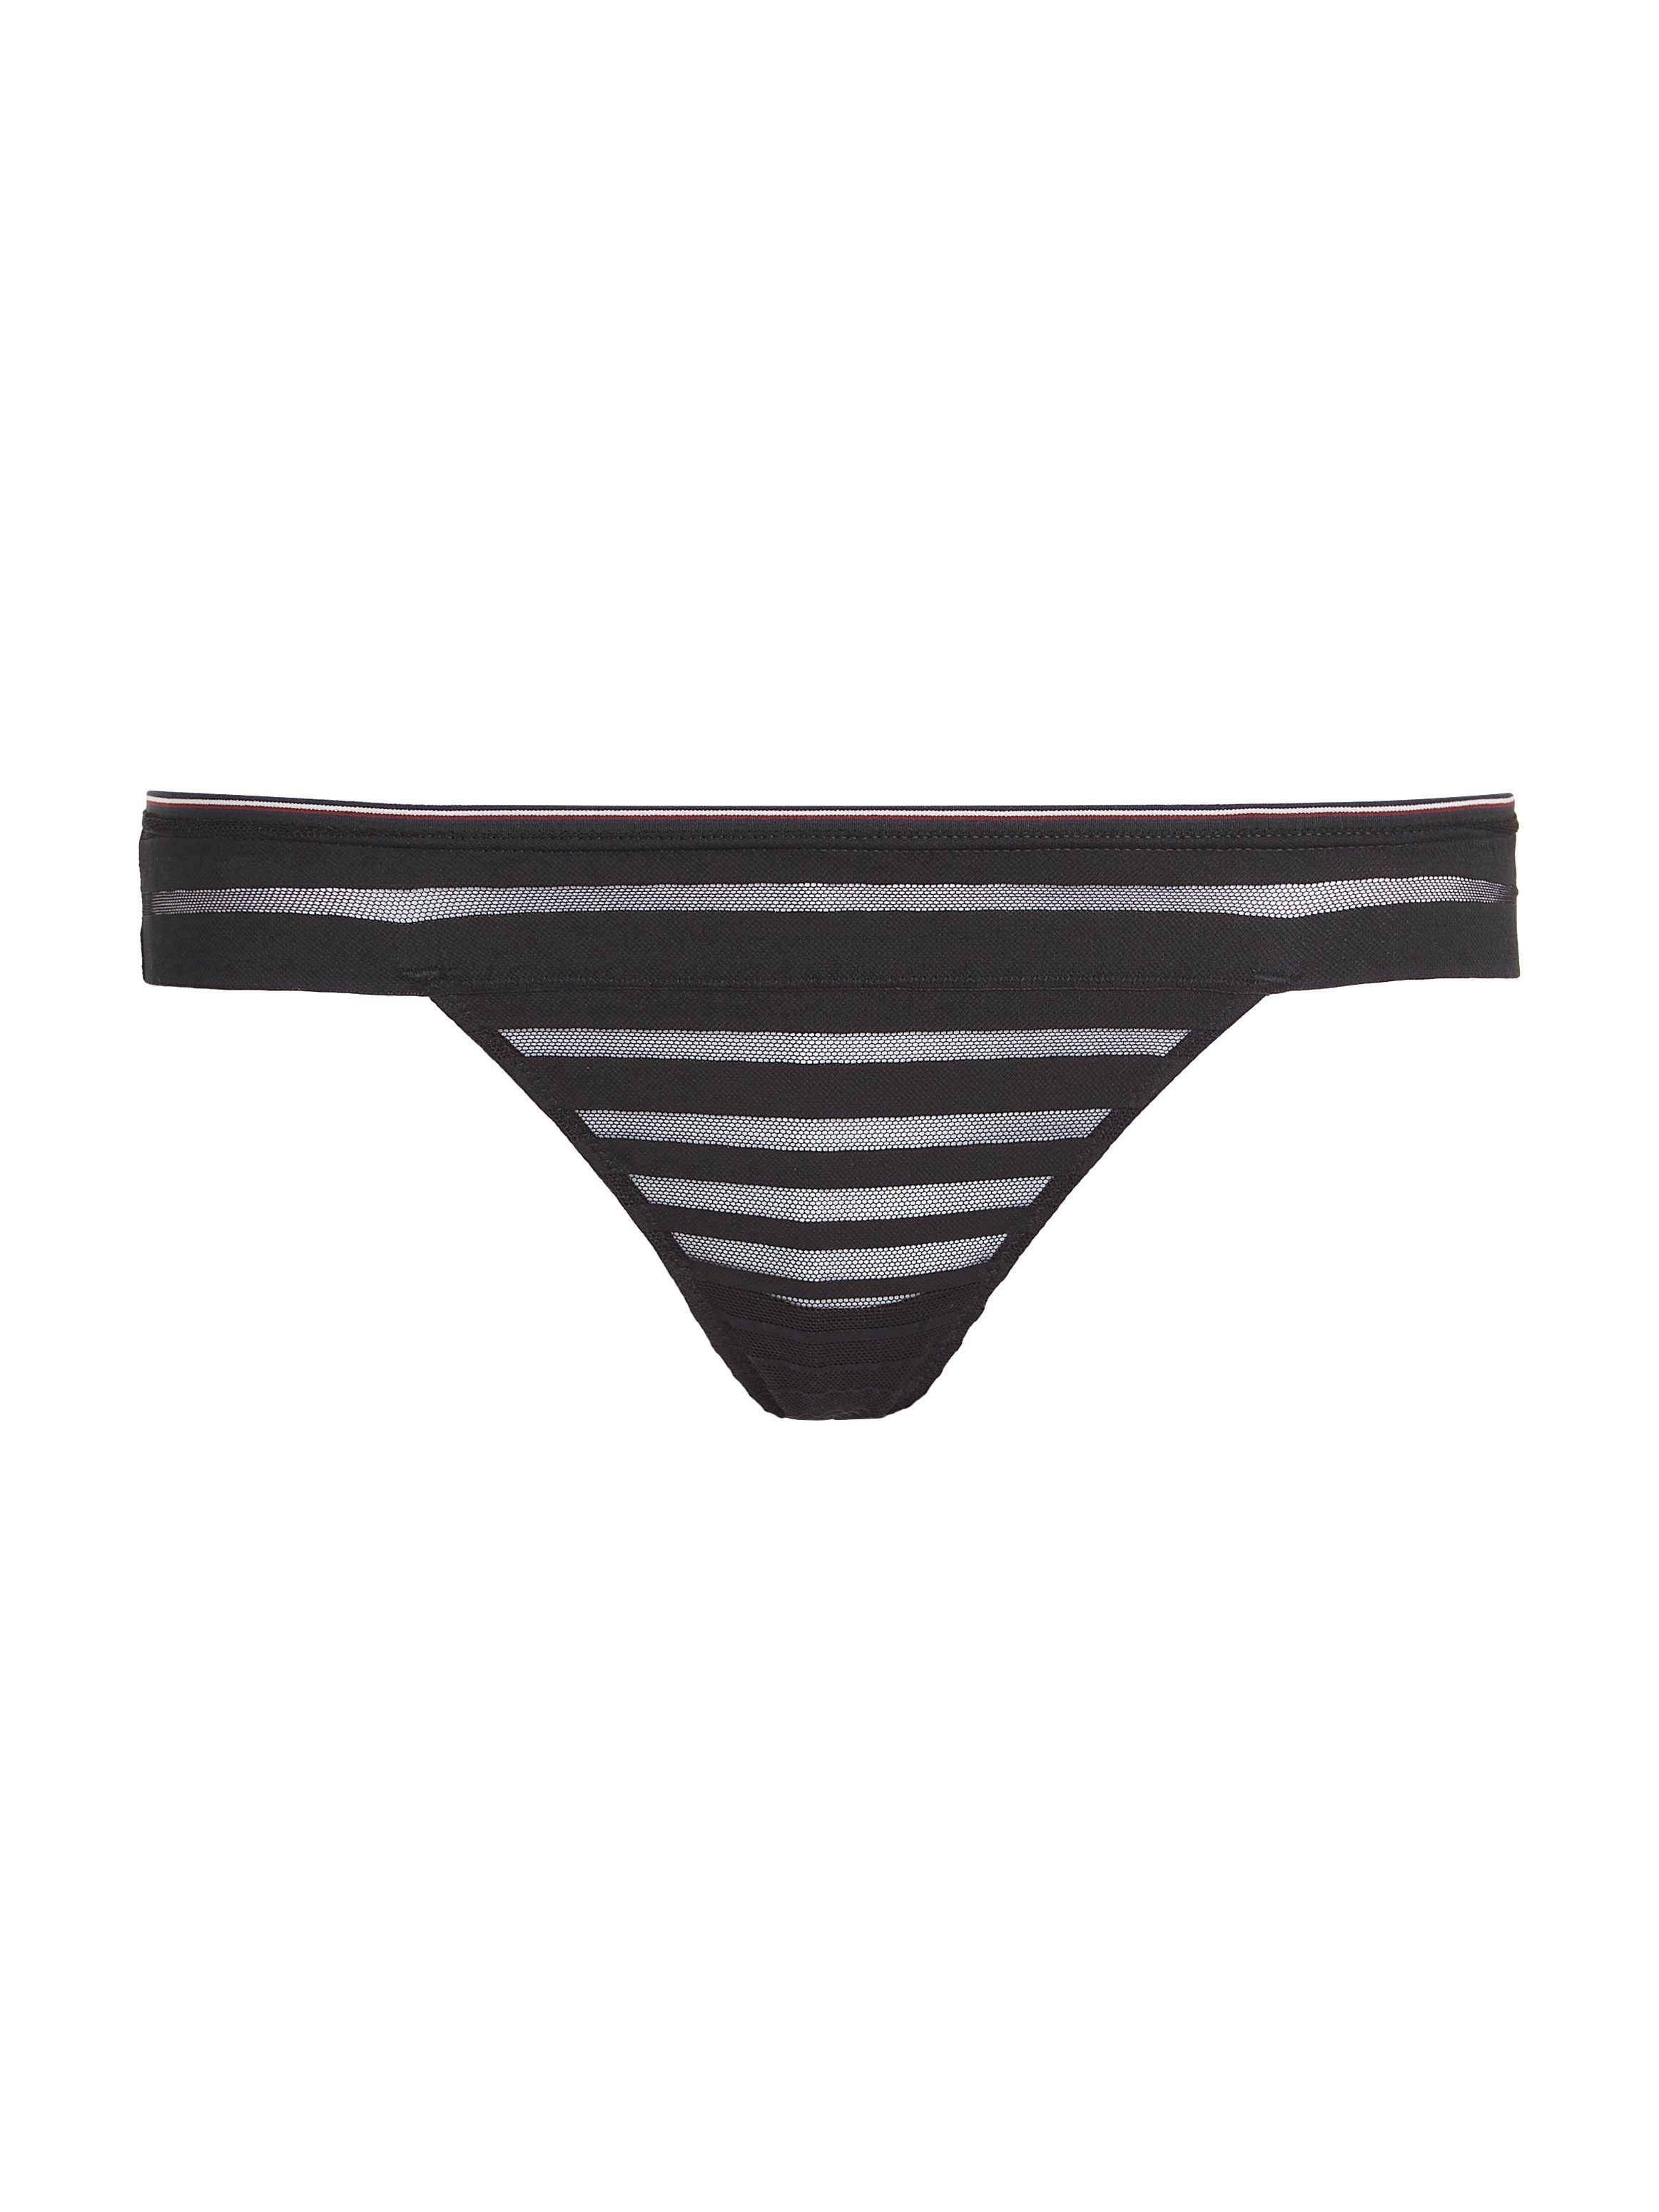 Tommy Hilfiger Underwear T-String THONG Kontrastband mit Bund in am Labelfarben